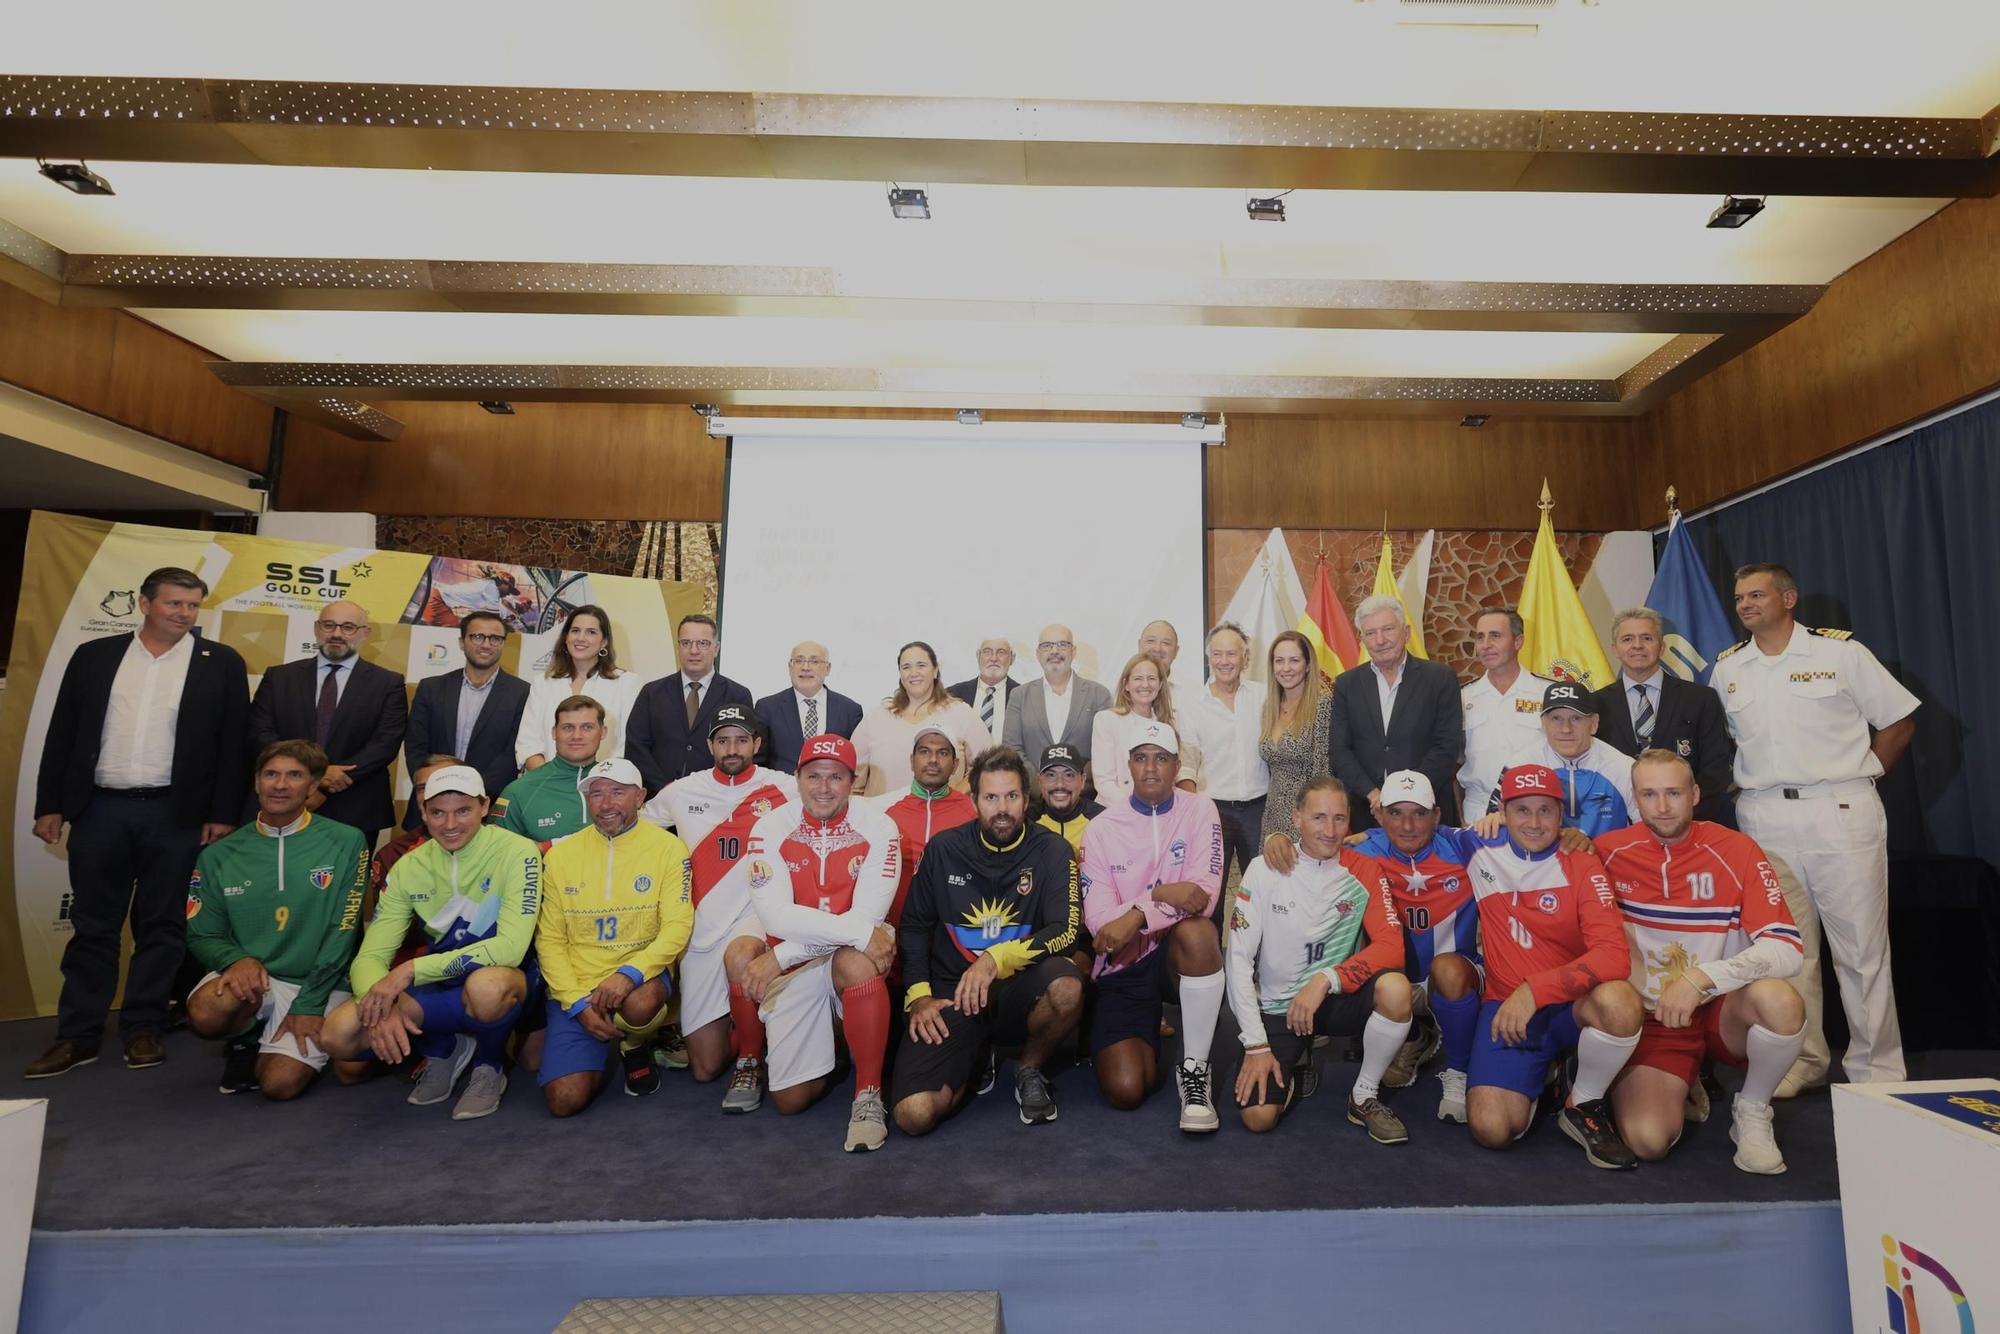 Gran Canaria SSL Gold Cup